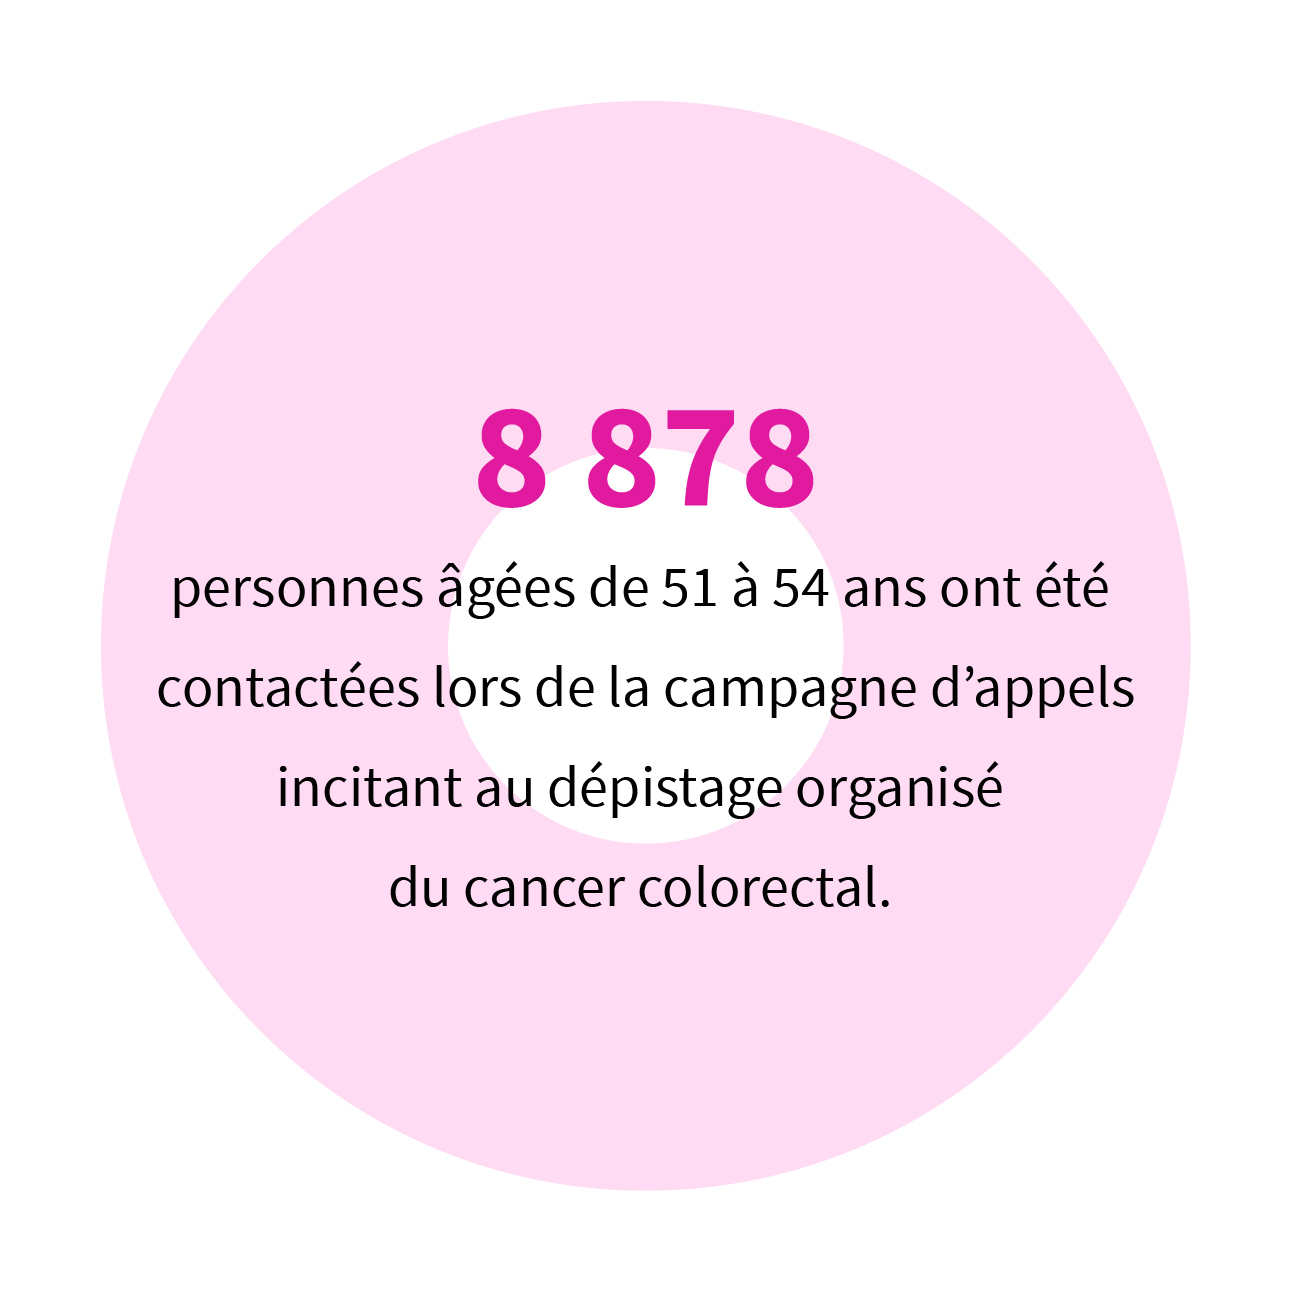 8 878 personnes âgées de 51 à 54 ans ont été contactées lors de la campagne d’appels attentionnés au dépistage organisé du cancer colorectal.